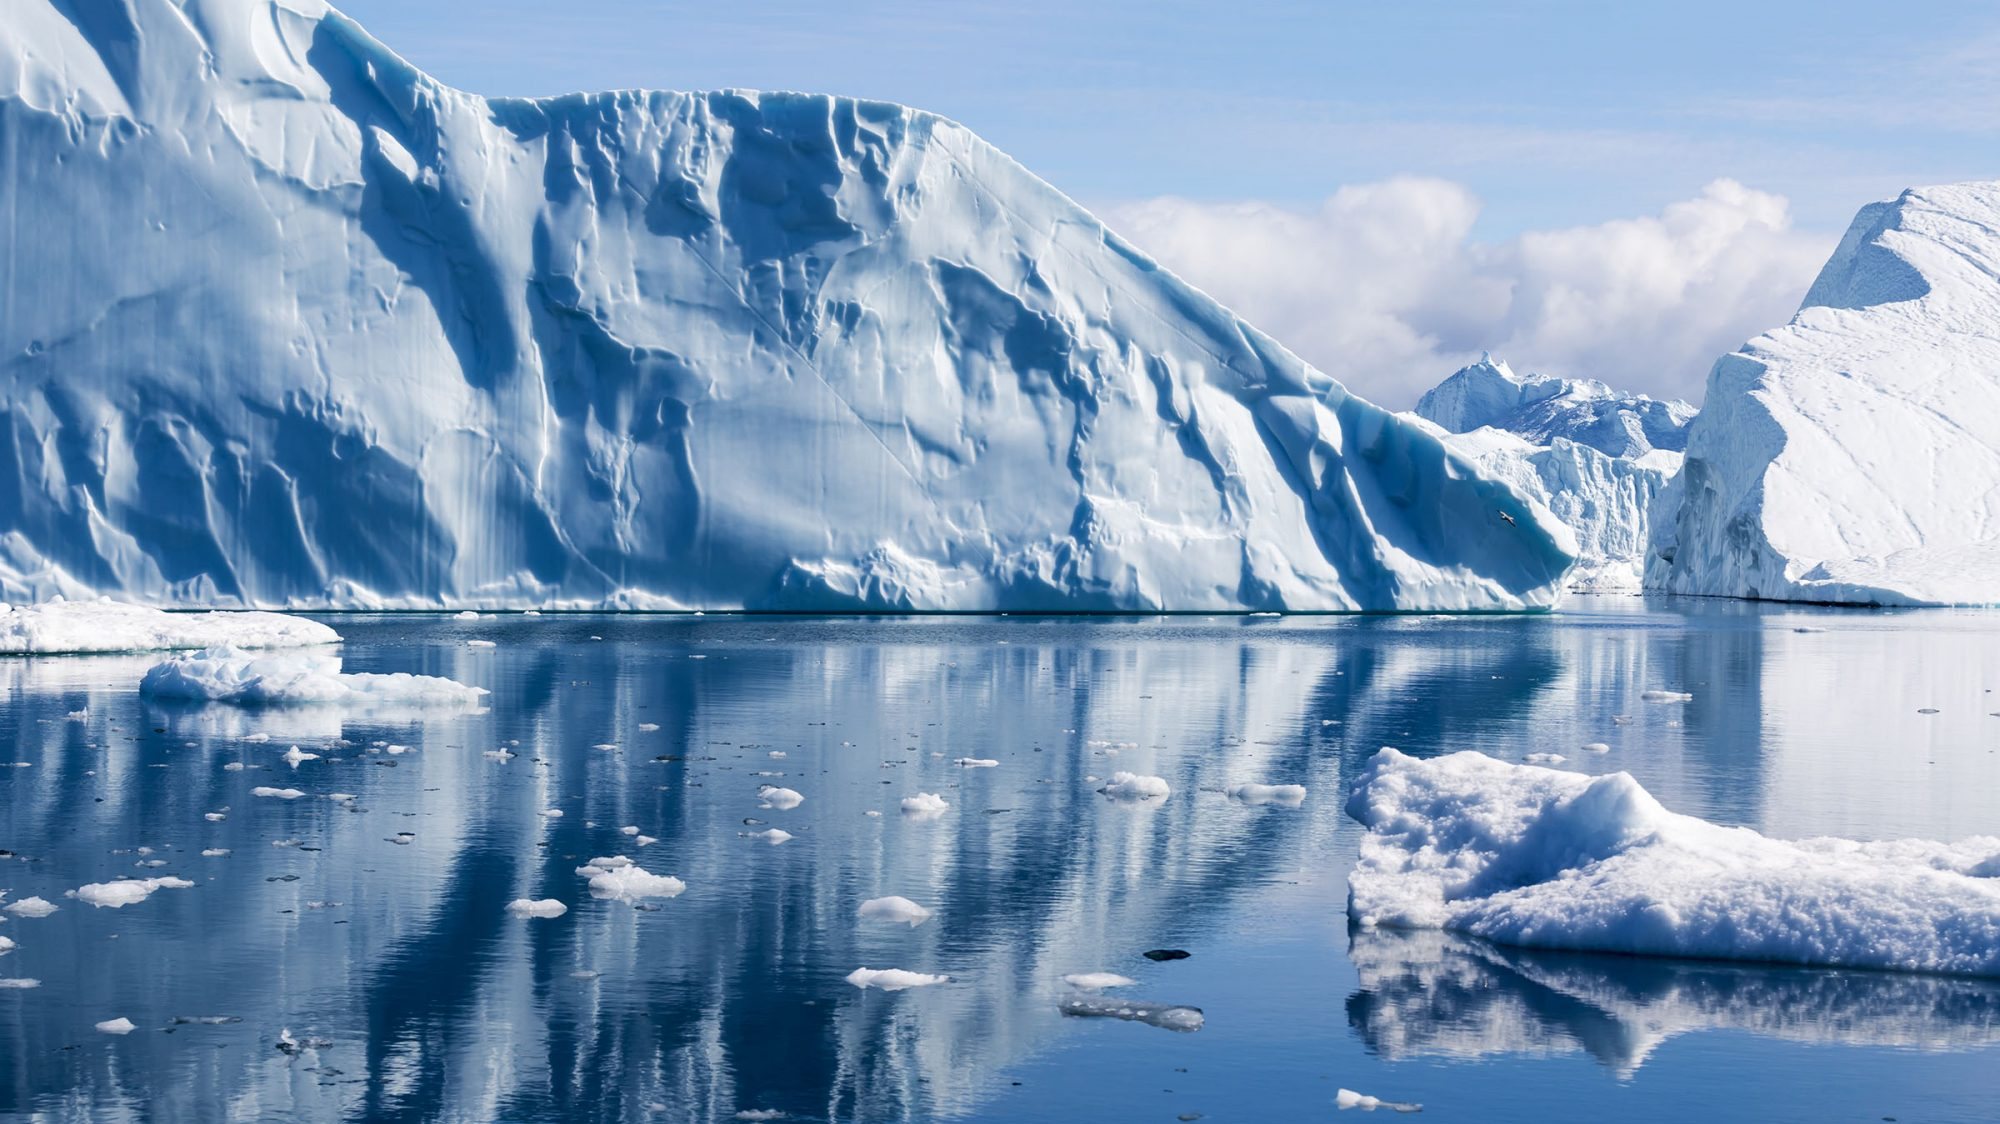 A operação decorreu a 15 metros de profundidade em águas com temperaturas baixas oriundas do degelo dos glaciares localizados nos fiordes do arquipélago ártico de Svalbard